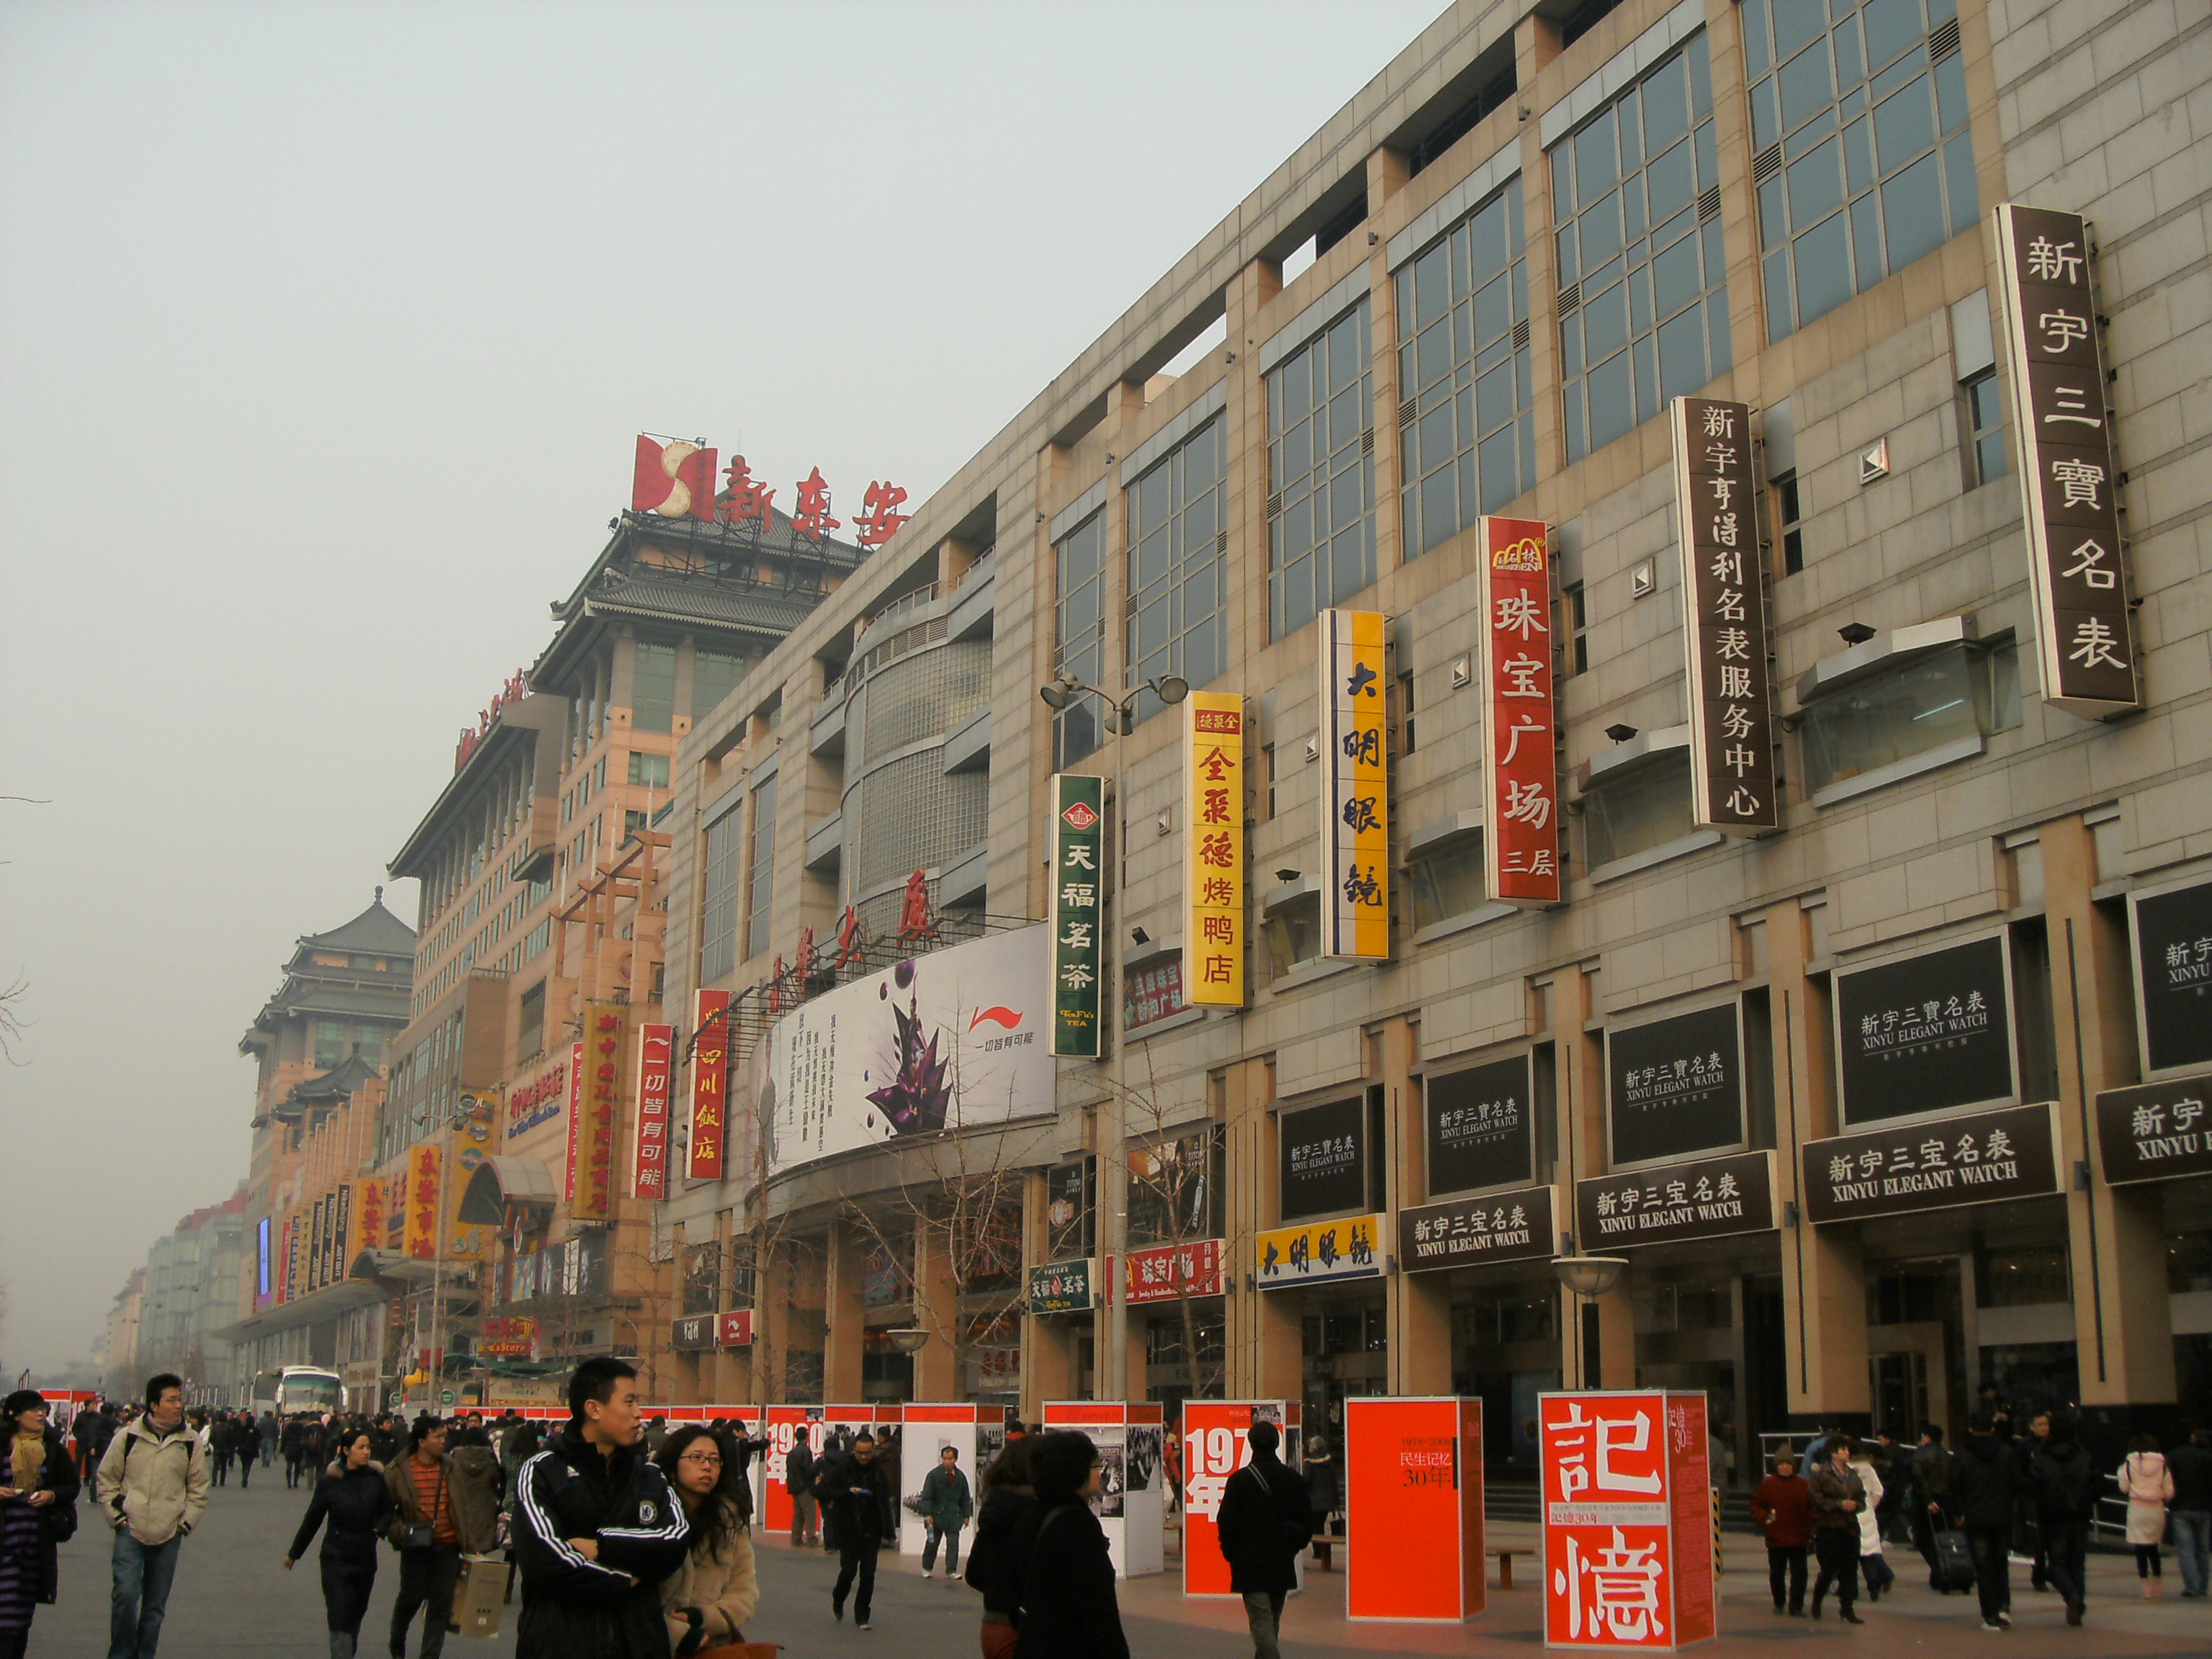 【携程攻略】北京王府井景点,这是北京最繁华的街道之一啊,吃喝玩乐应